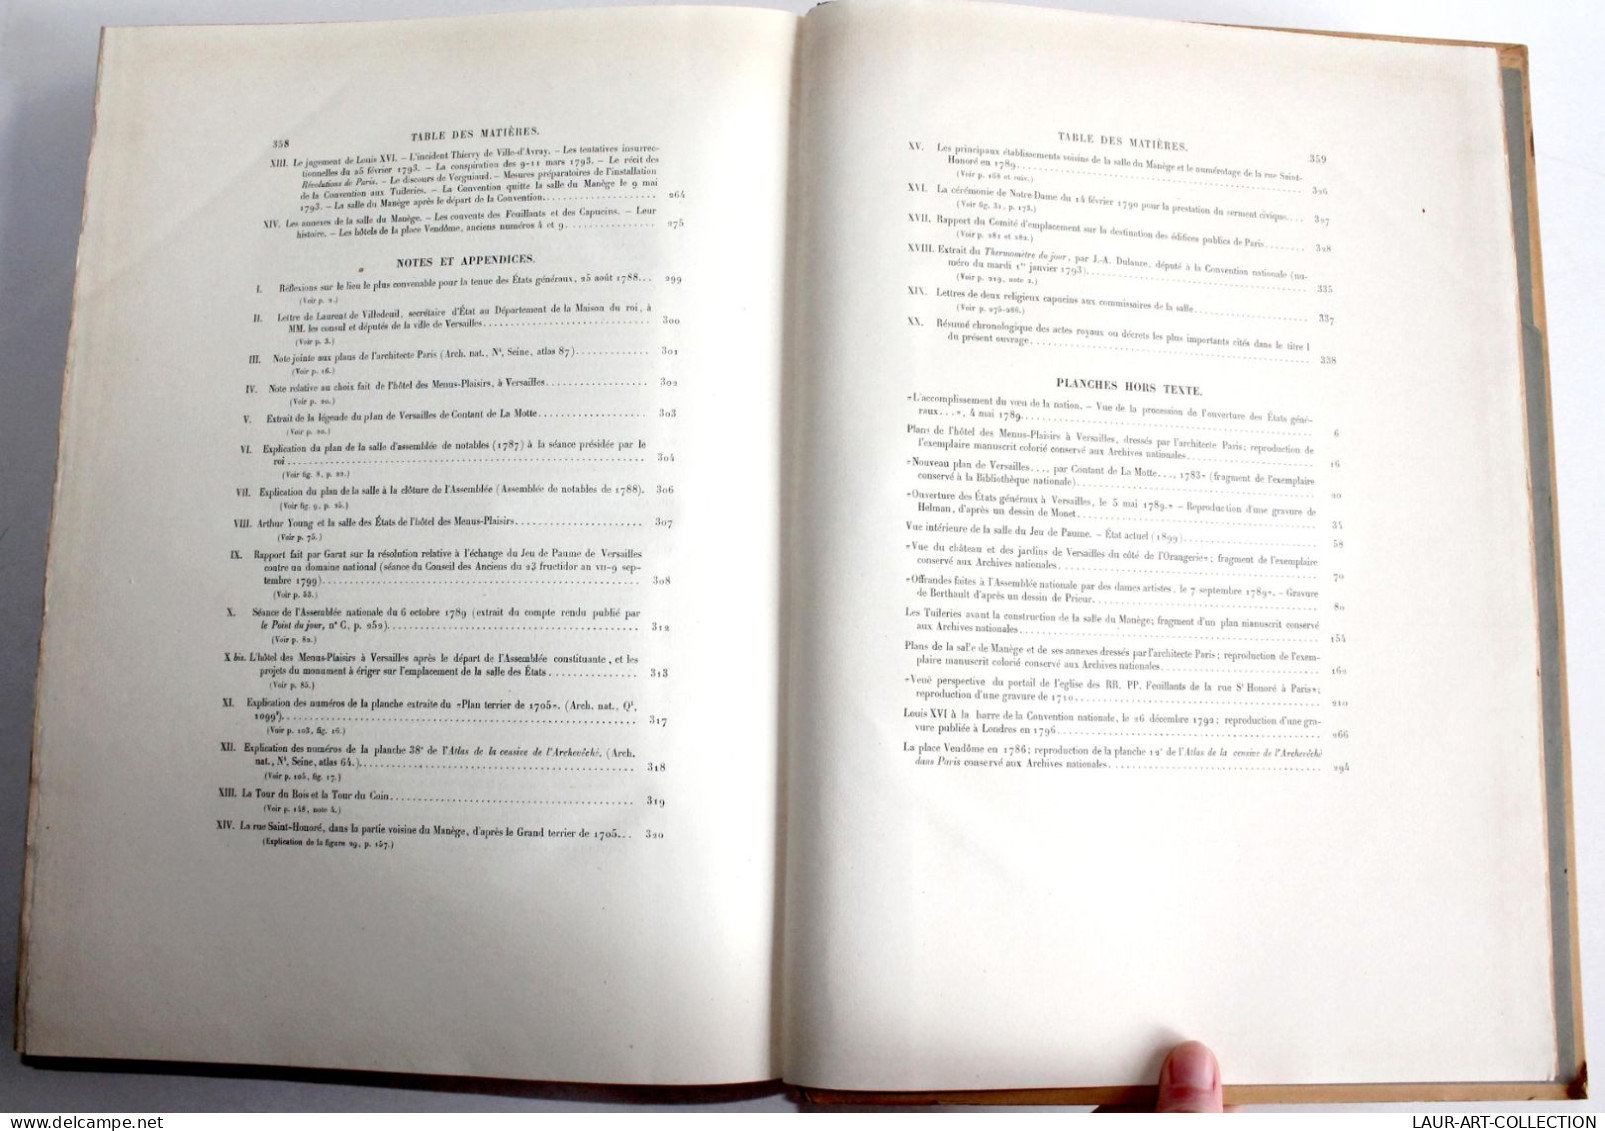 HISTOIRE DES EDIFICES DE REVOLUTION FRANCAISE BRETTE 1902 EDITION ORIGINAL 2,8kg / ANCIEN LIVRE ART XXe (2603.155)